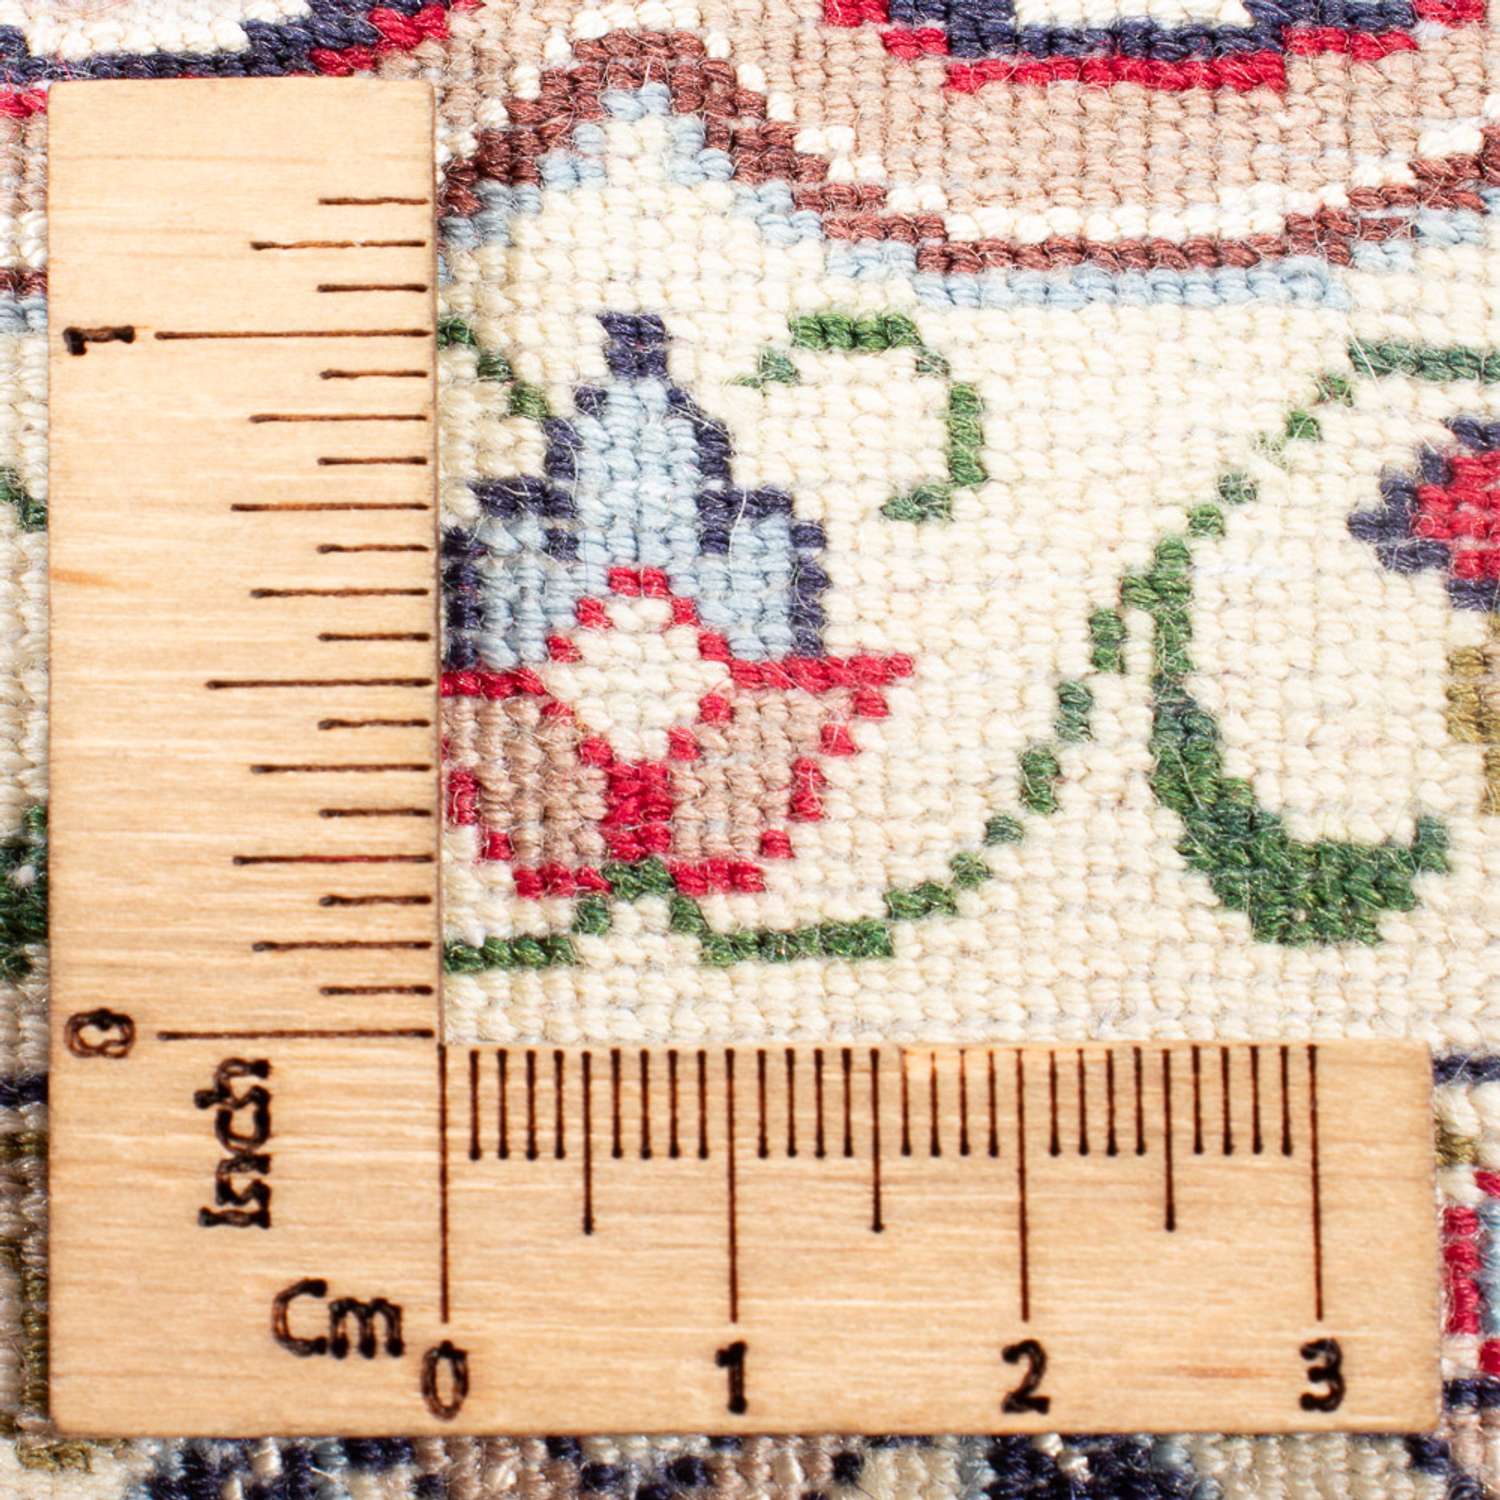 Perský koberec - Isfahán - Premium - 108 x 70 cm - červená